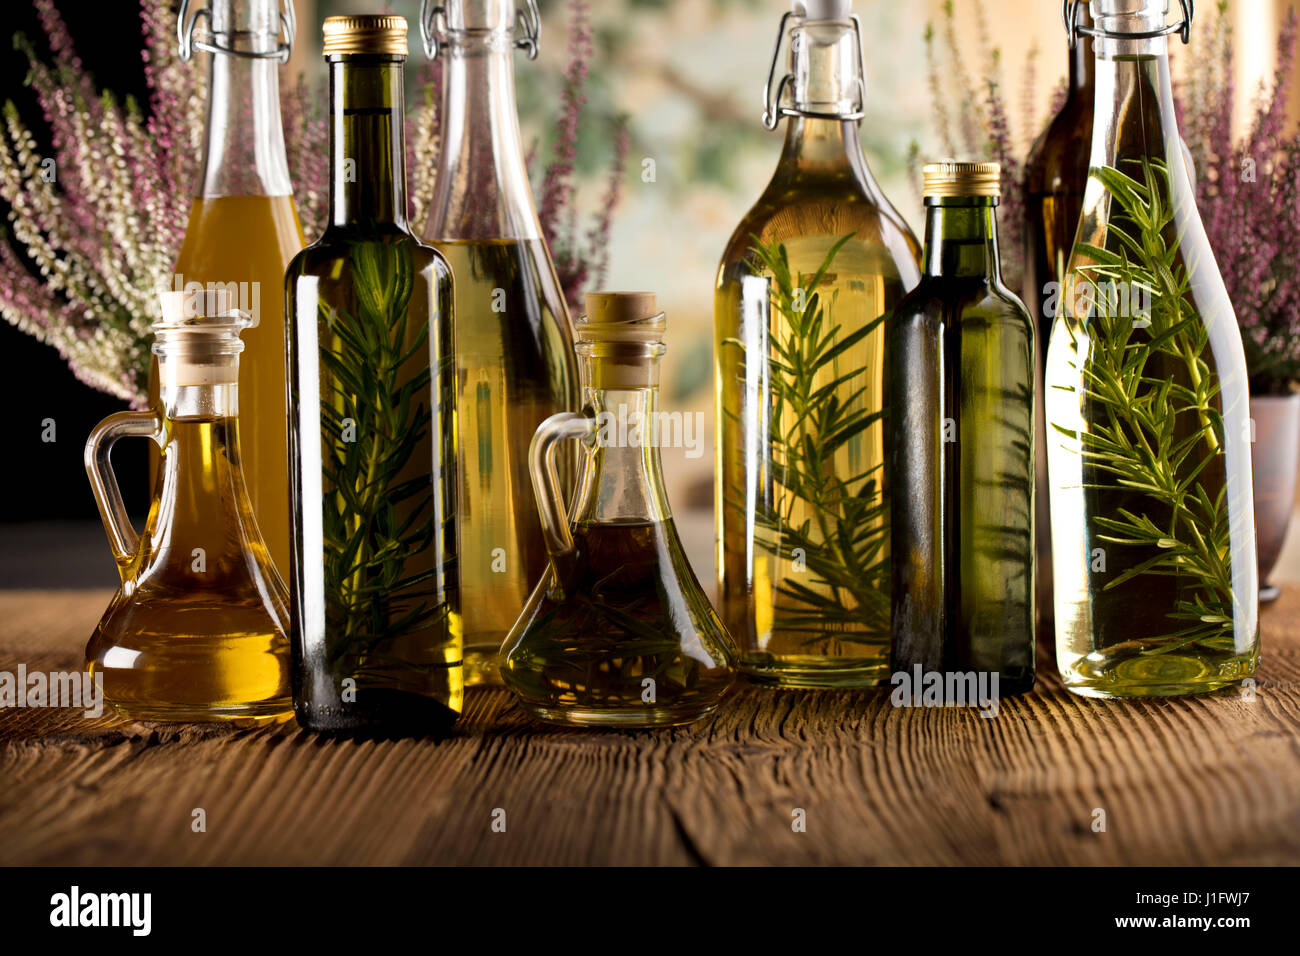 Italienisches Essenskonzept, Rosmarin-Oliven-Öl, gesunde Ernährung Stockfoto